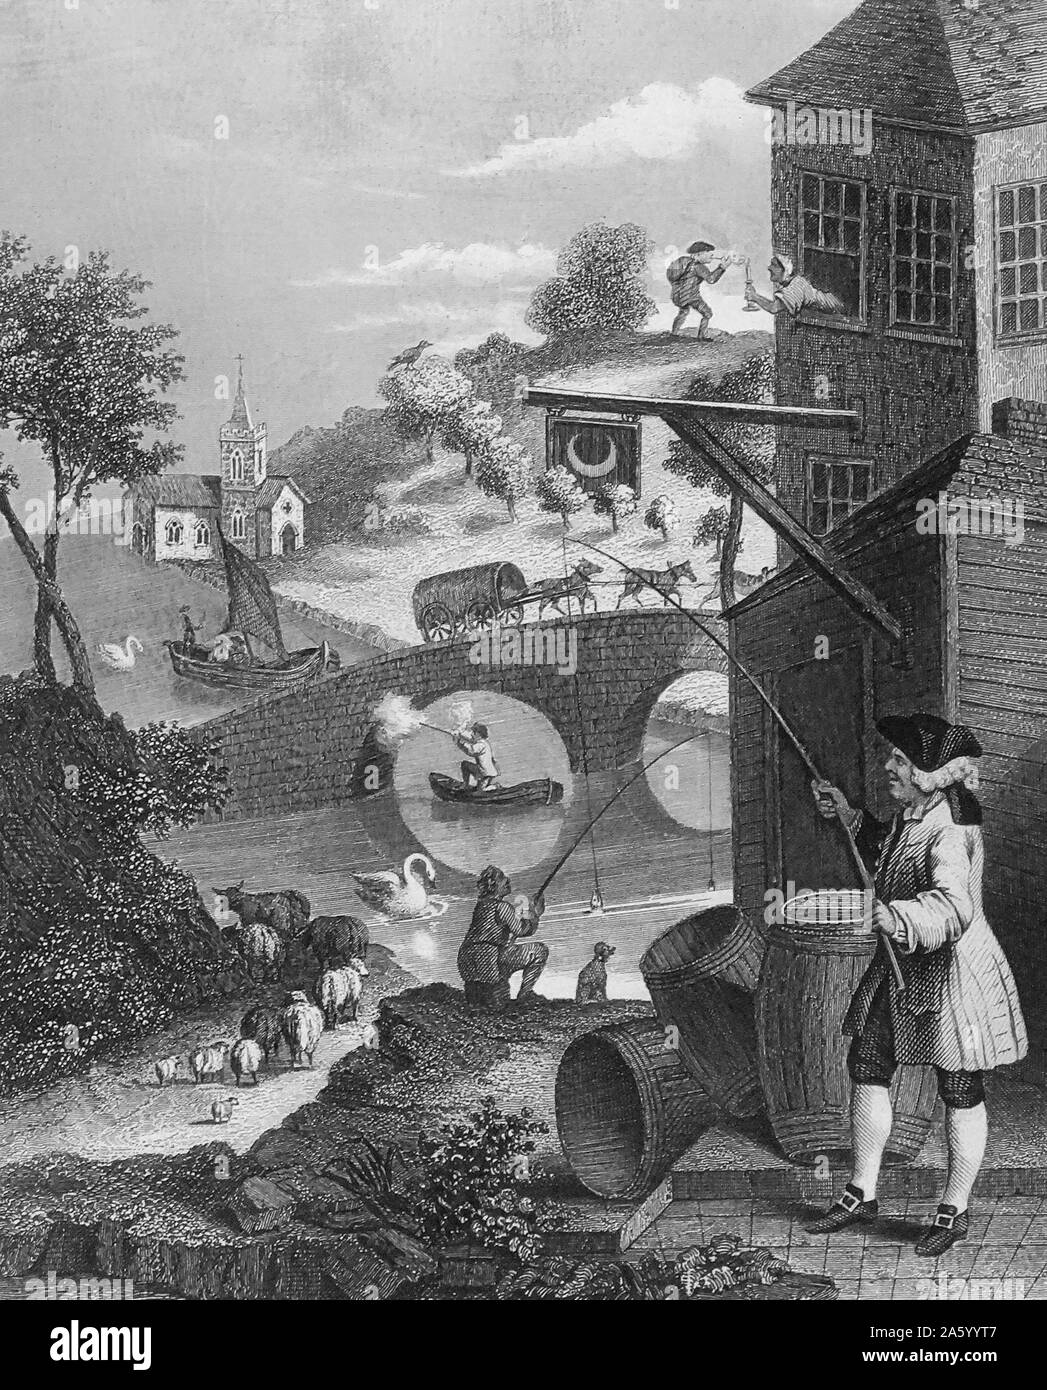 Incisione di William Hogarth (1697-1764) pittore inglese, printmaker, pittoriche satiro, critico sociale e fumettista editoriale che è stato accreditato con pionieristico di western arte sequenziale. Datata xviii secolo. Foto Stock